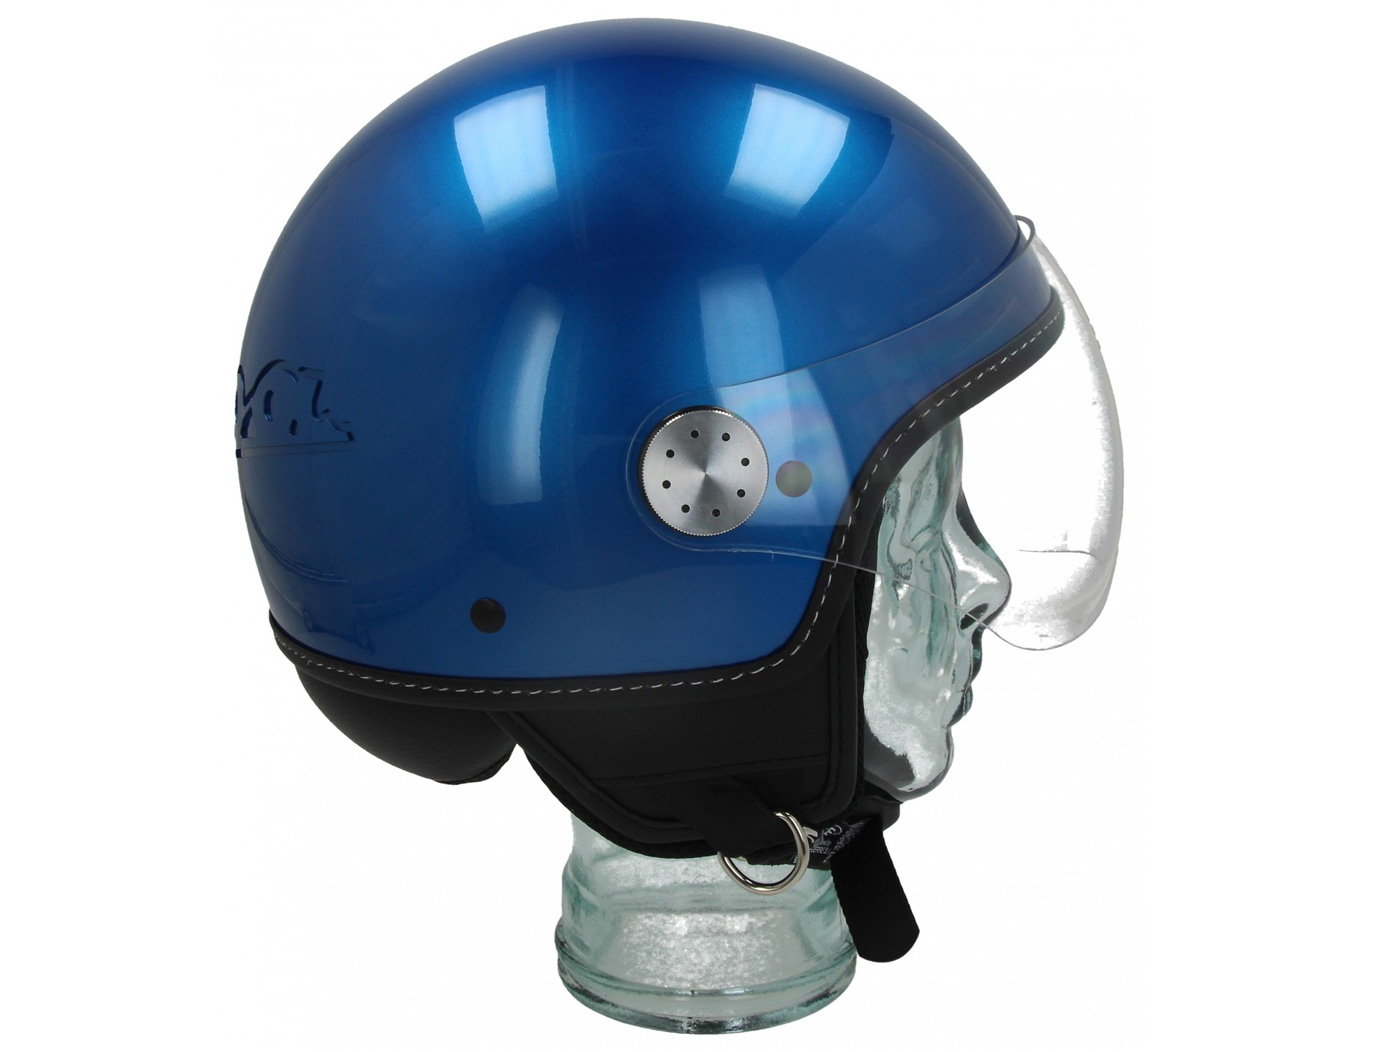 Casco -VESPA Visor 3.0- azul (vivace blue lucido (261/A)) - XS (52-54cm), Cascos, Cascos